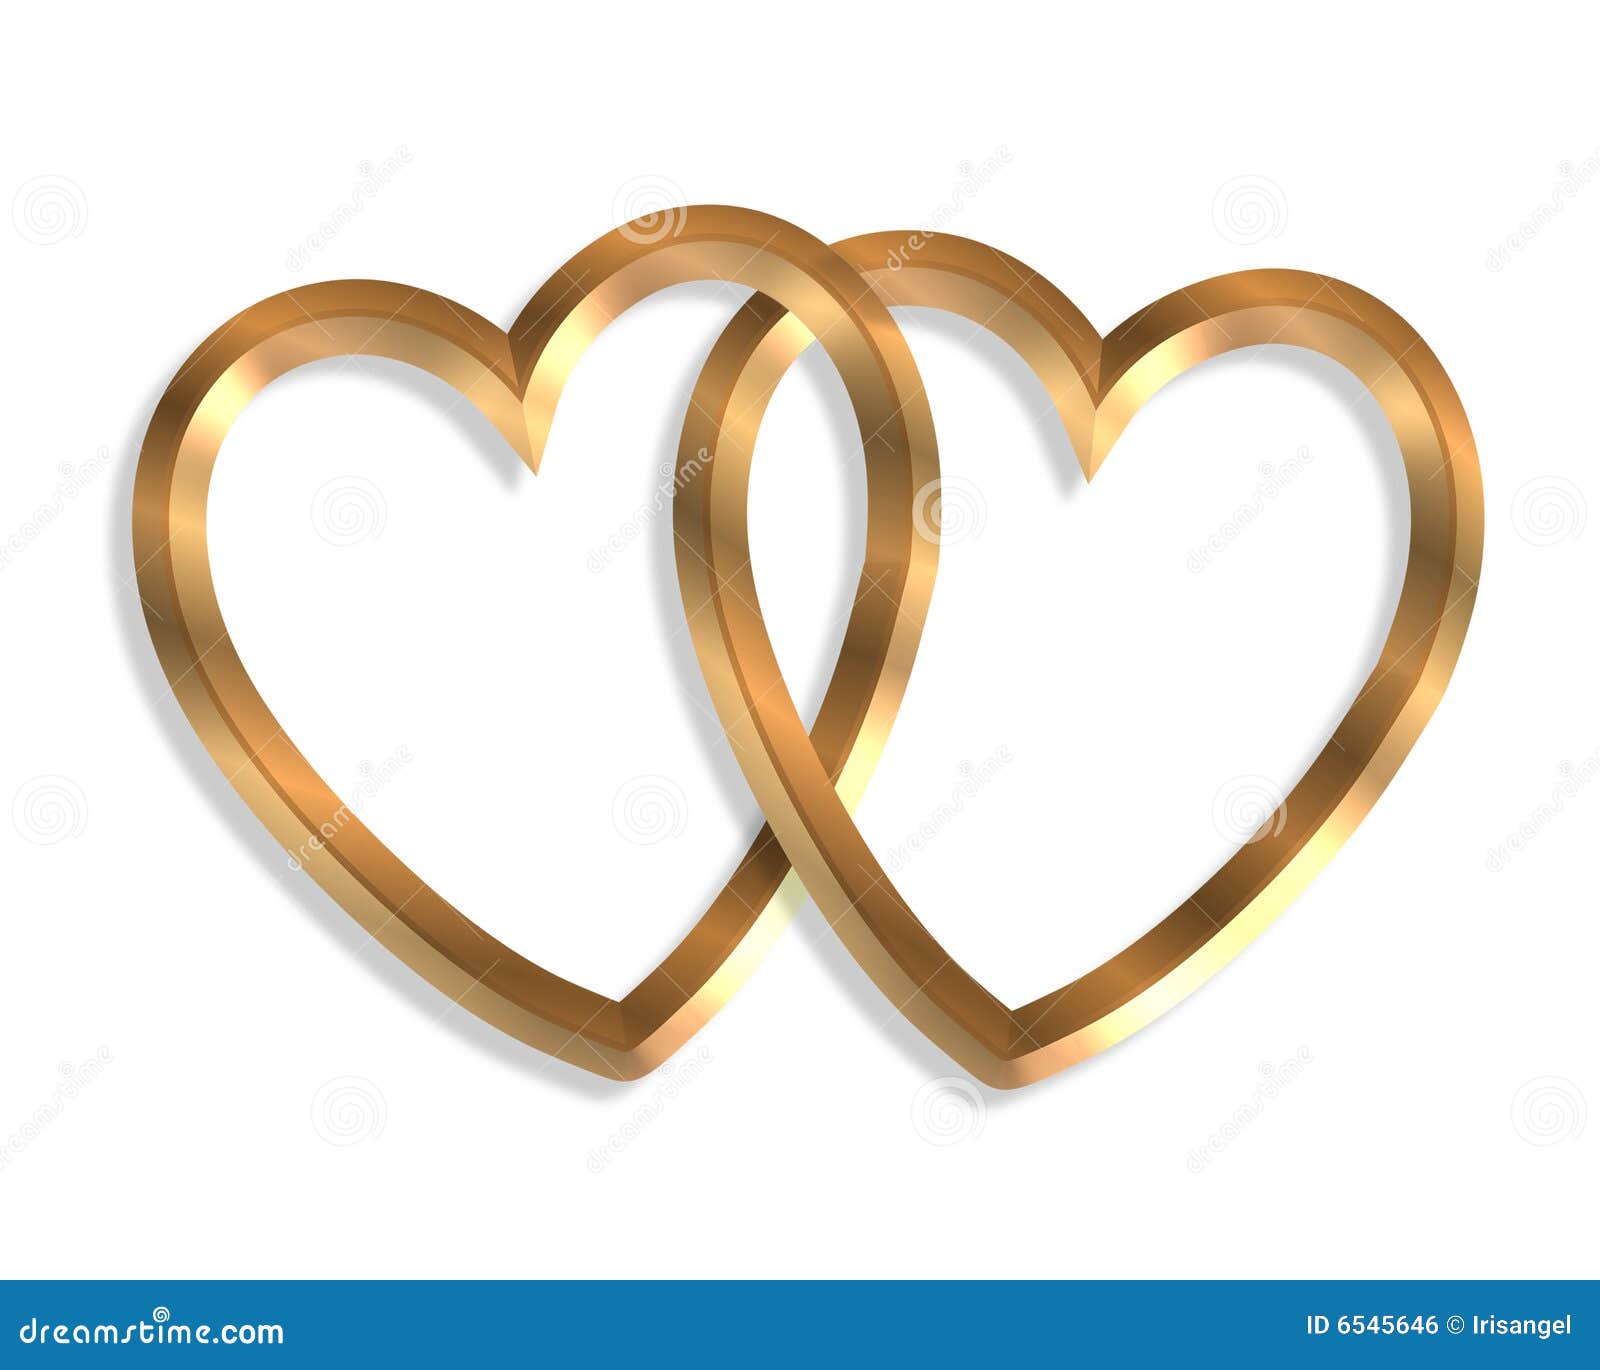 free linked hearts clip art - photo #36